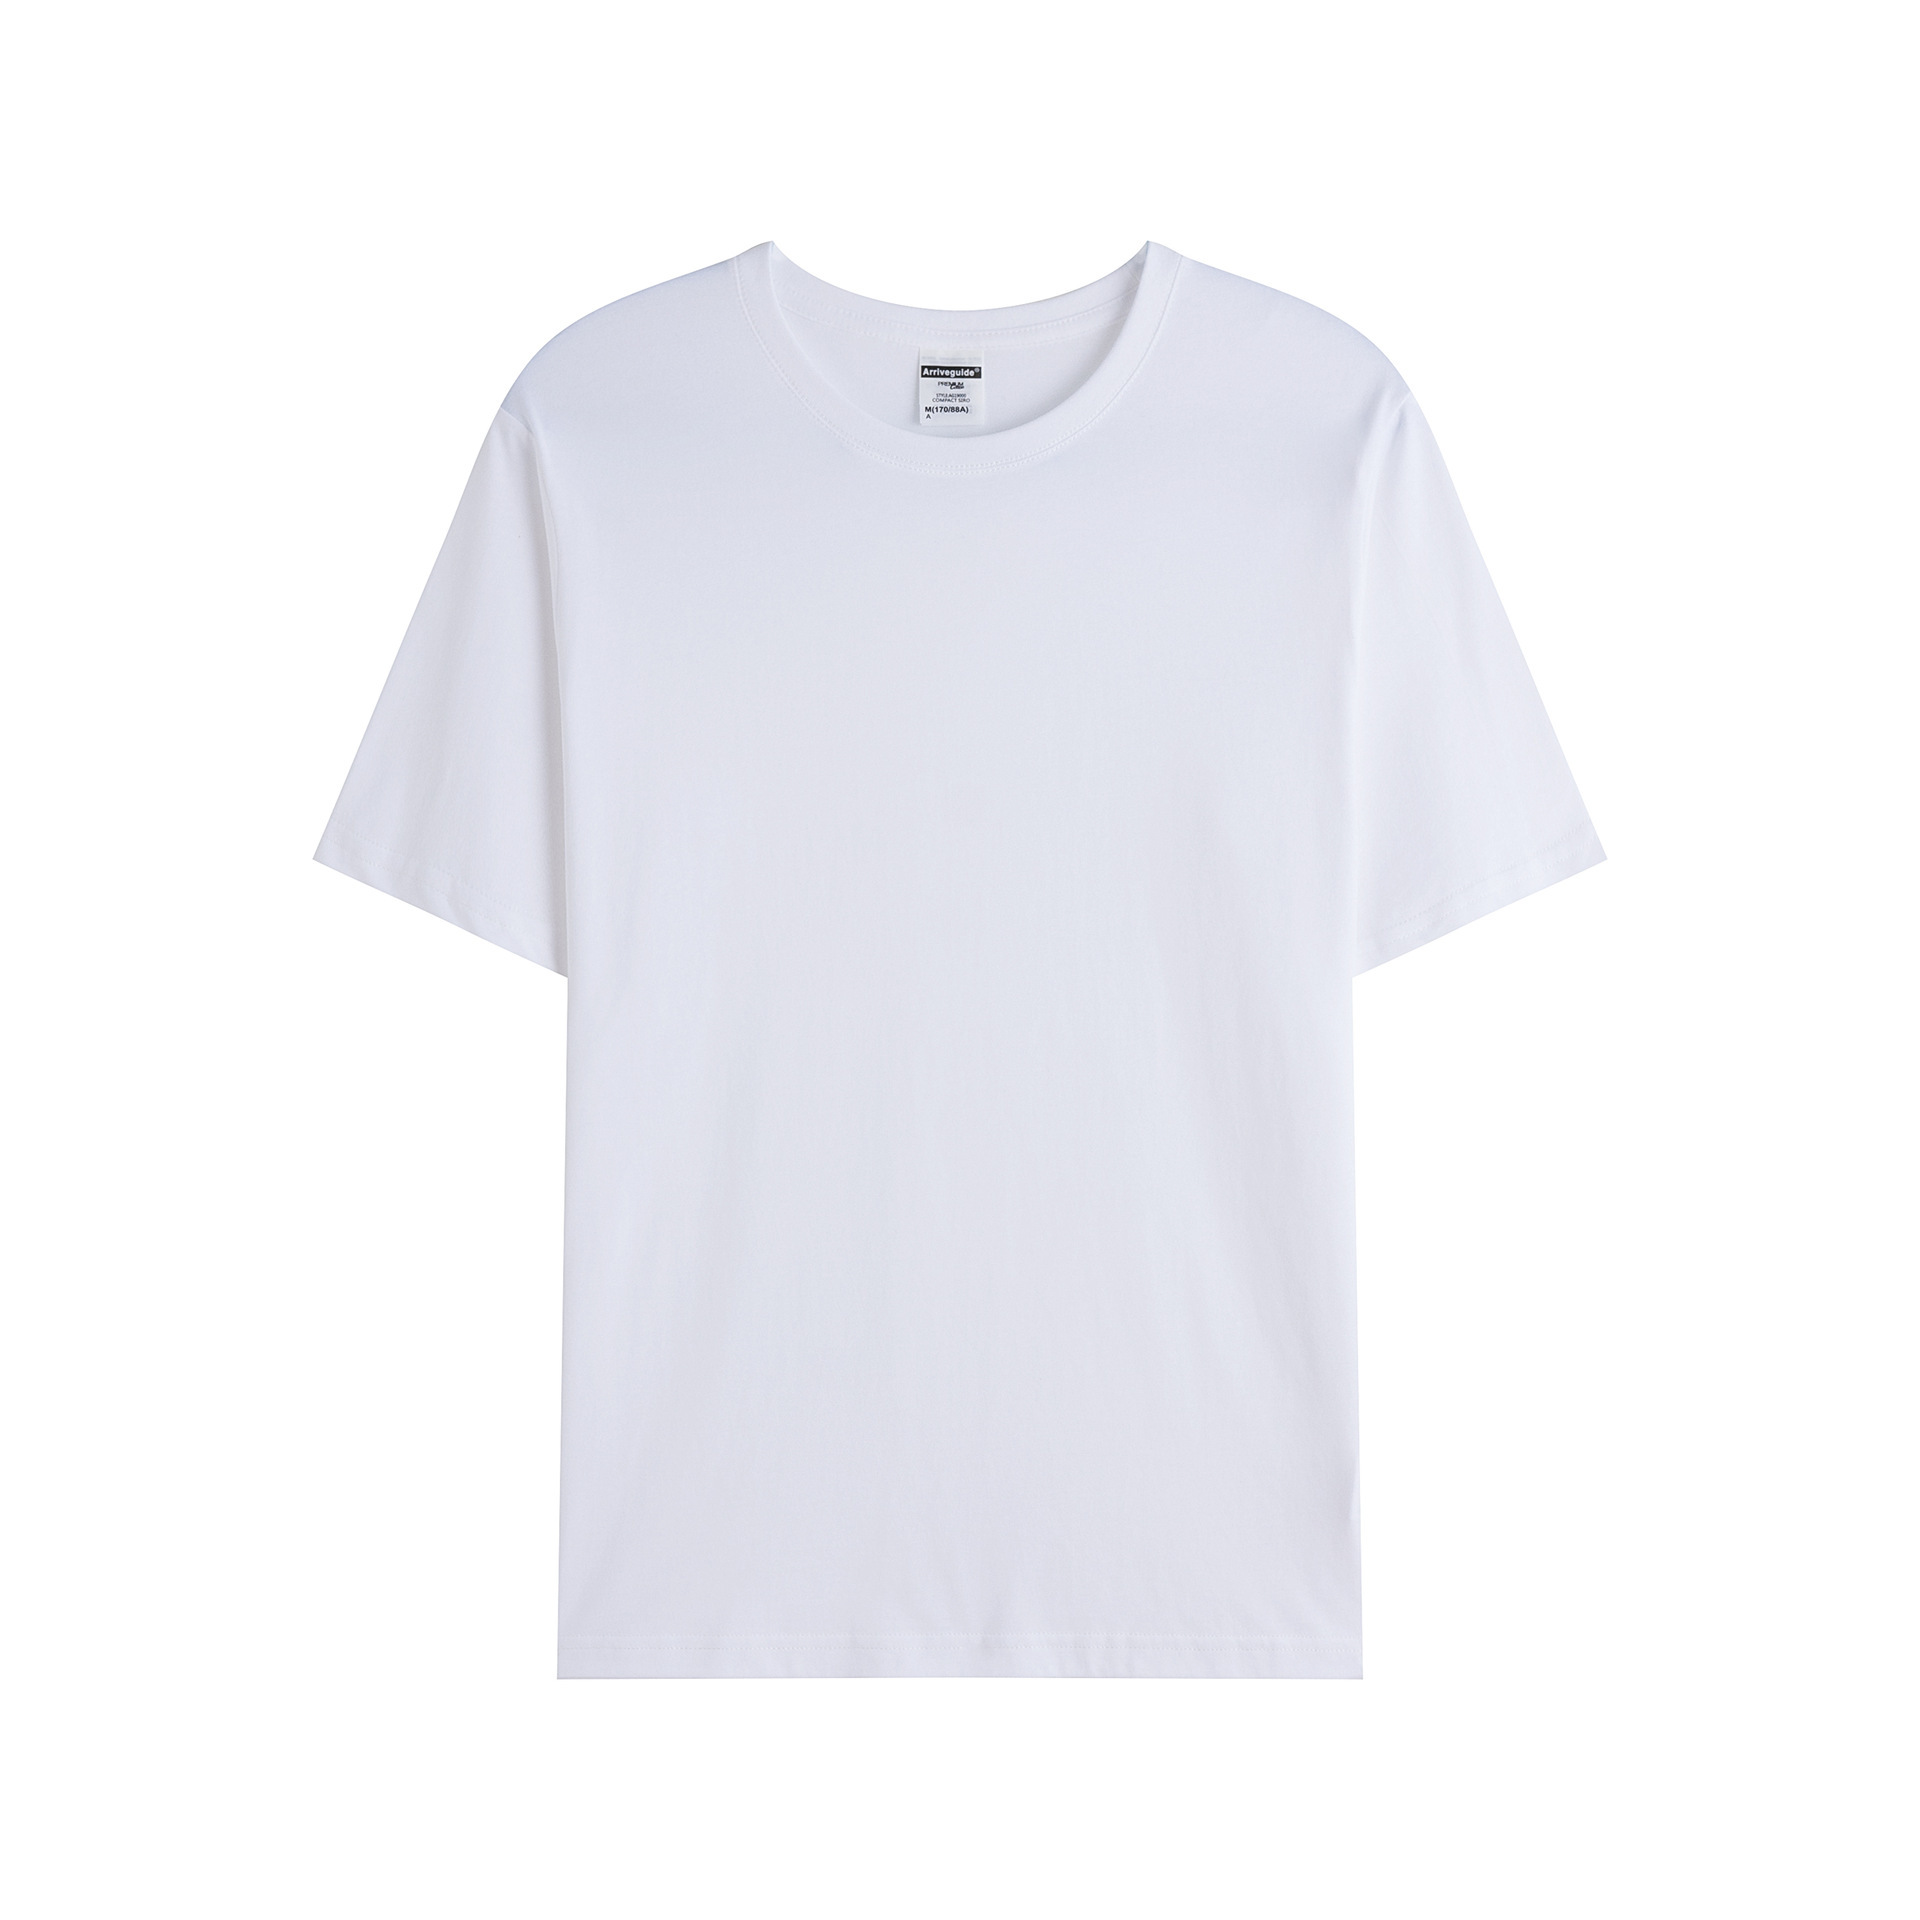 Hip Hop Paris Olympics Graphic Cotton T-Shirt